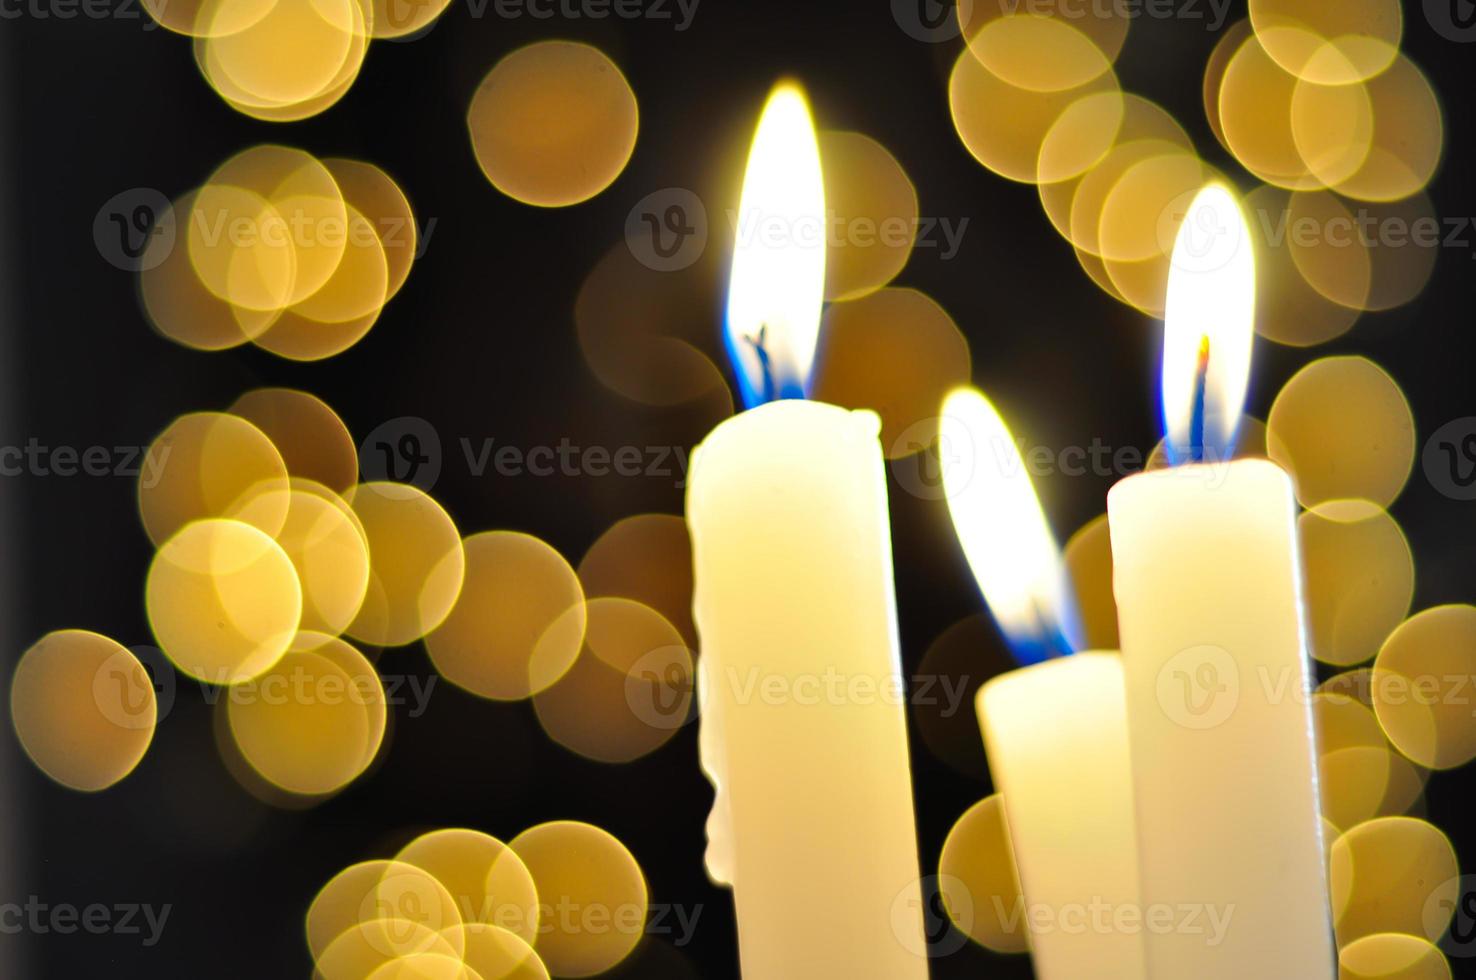 candele e palline a Natale foto